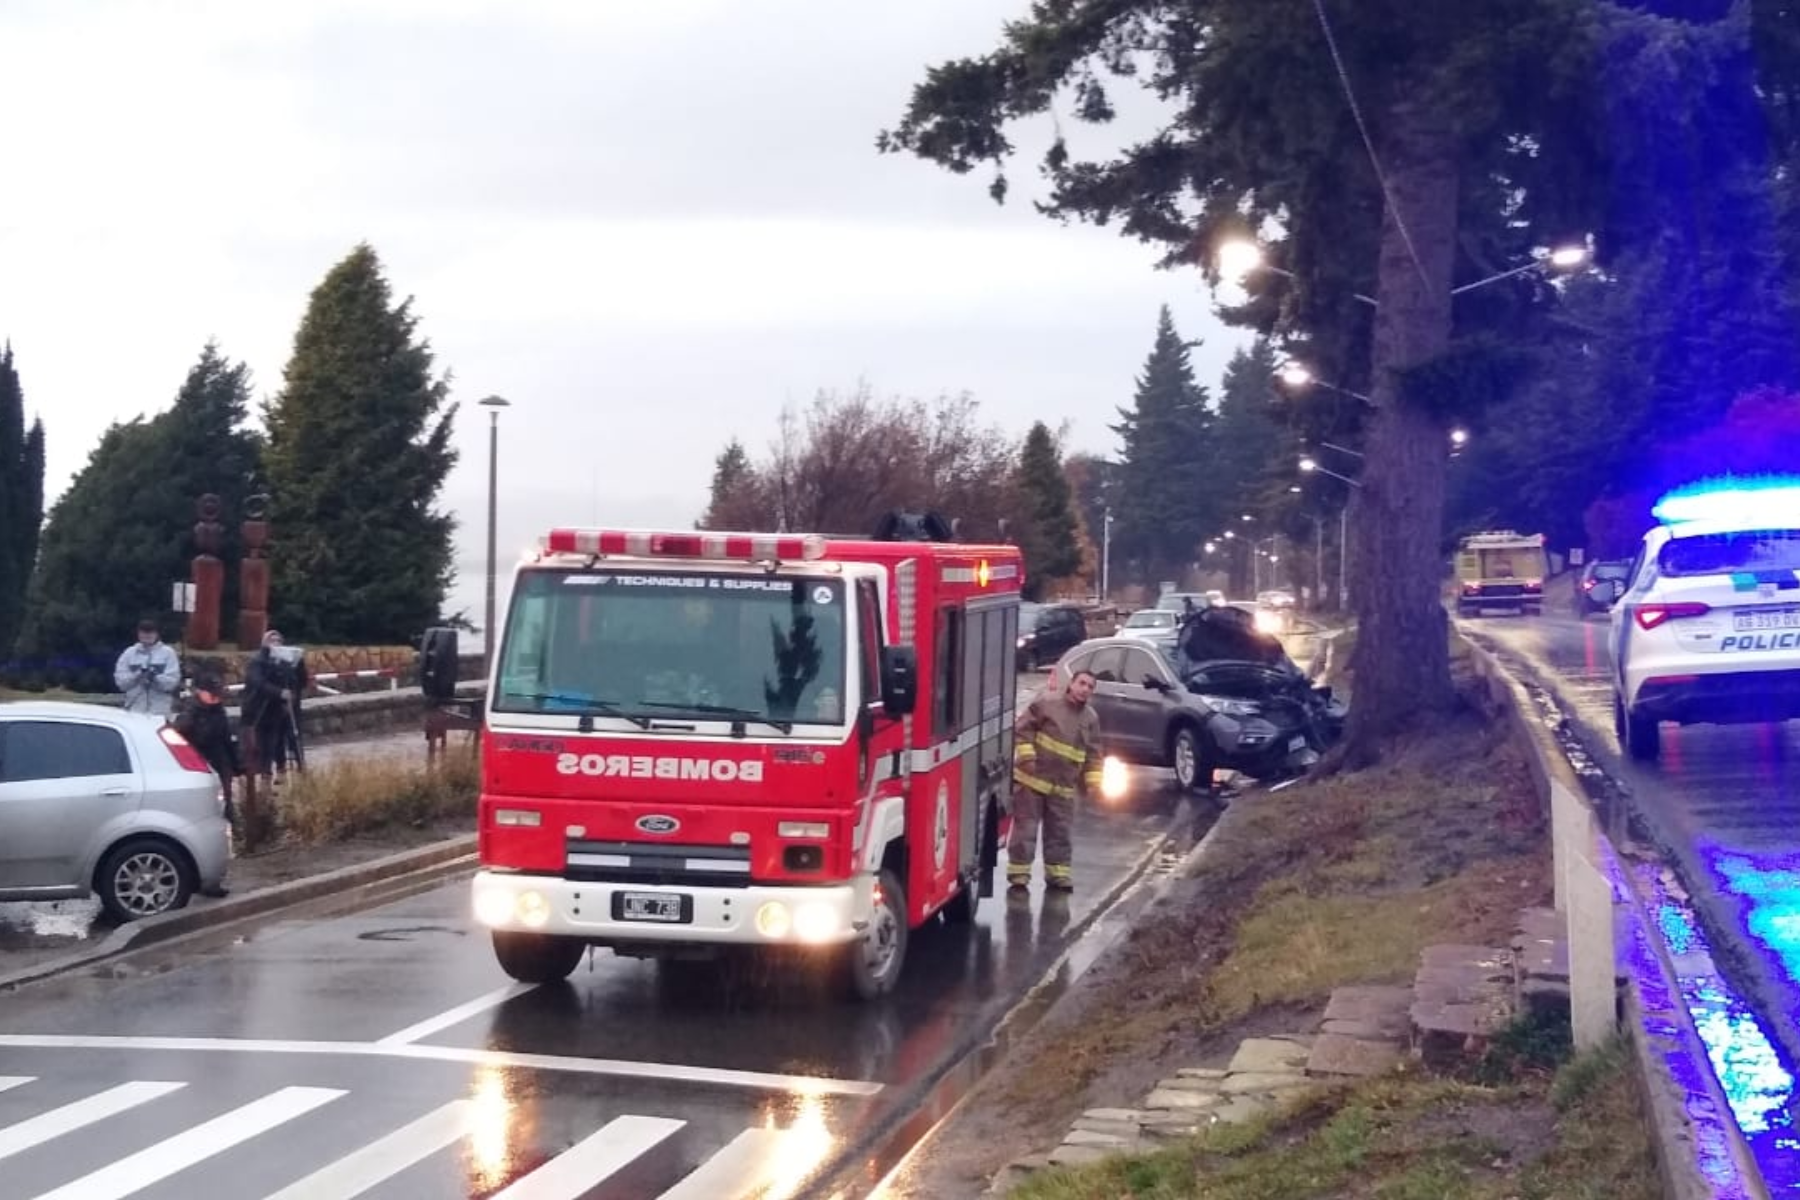 Los vehículos involucrados en el choque en Bariloche, con uno de ellos impactando contra un árbol y el otro sobre la vereda.